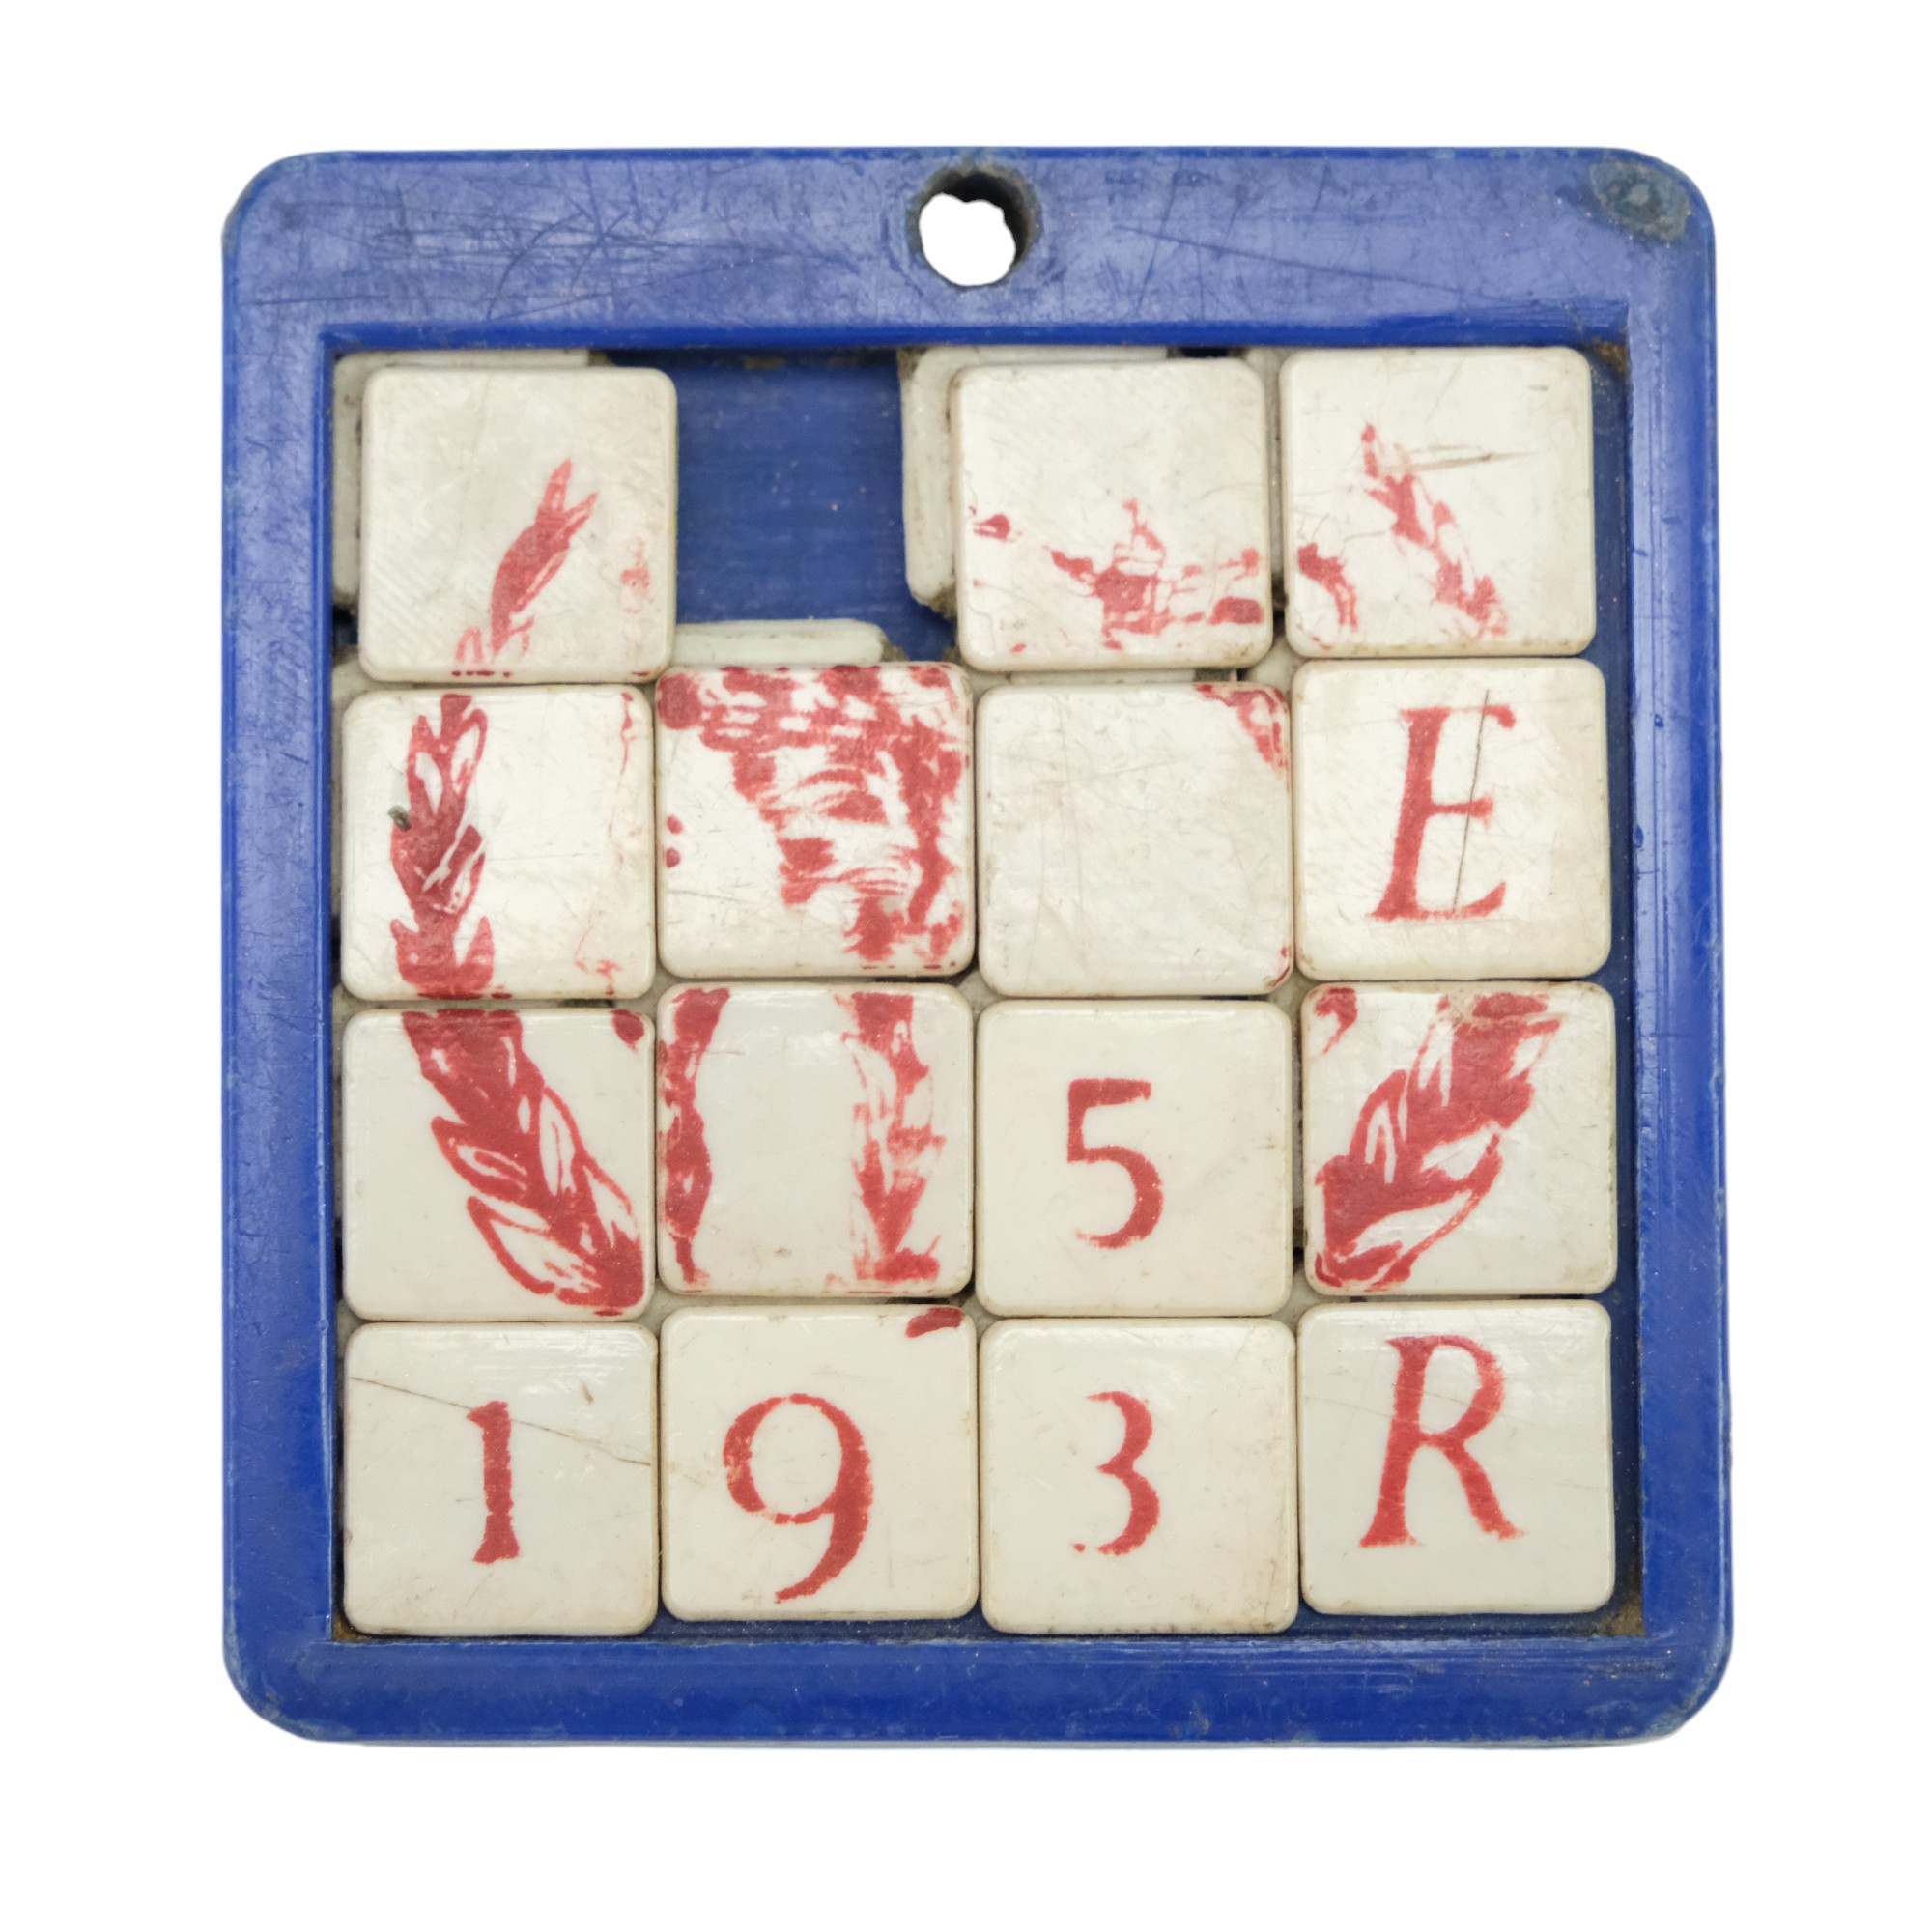 A 1953 Coronation sliding tile puzzle, 5 x 5 cm